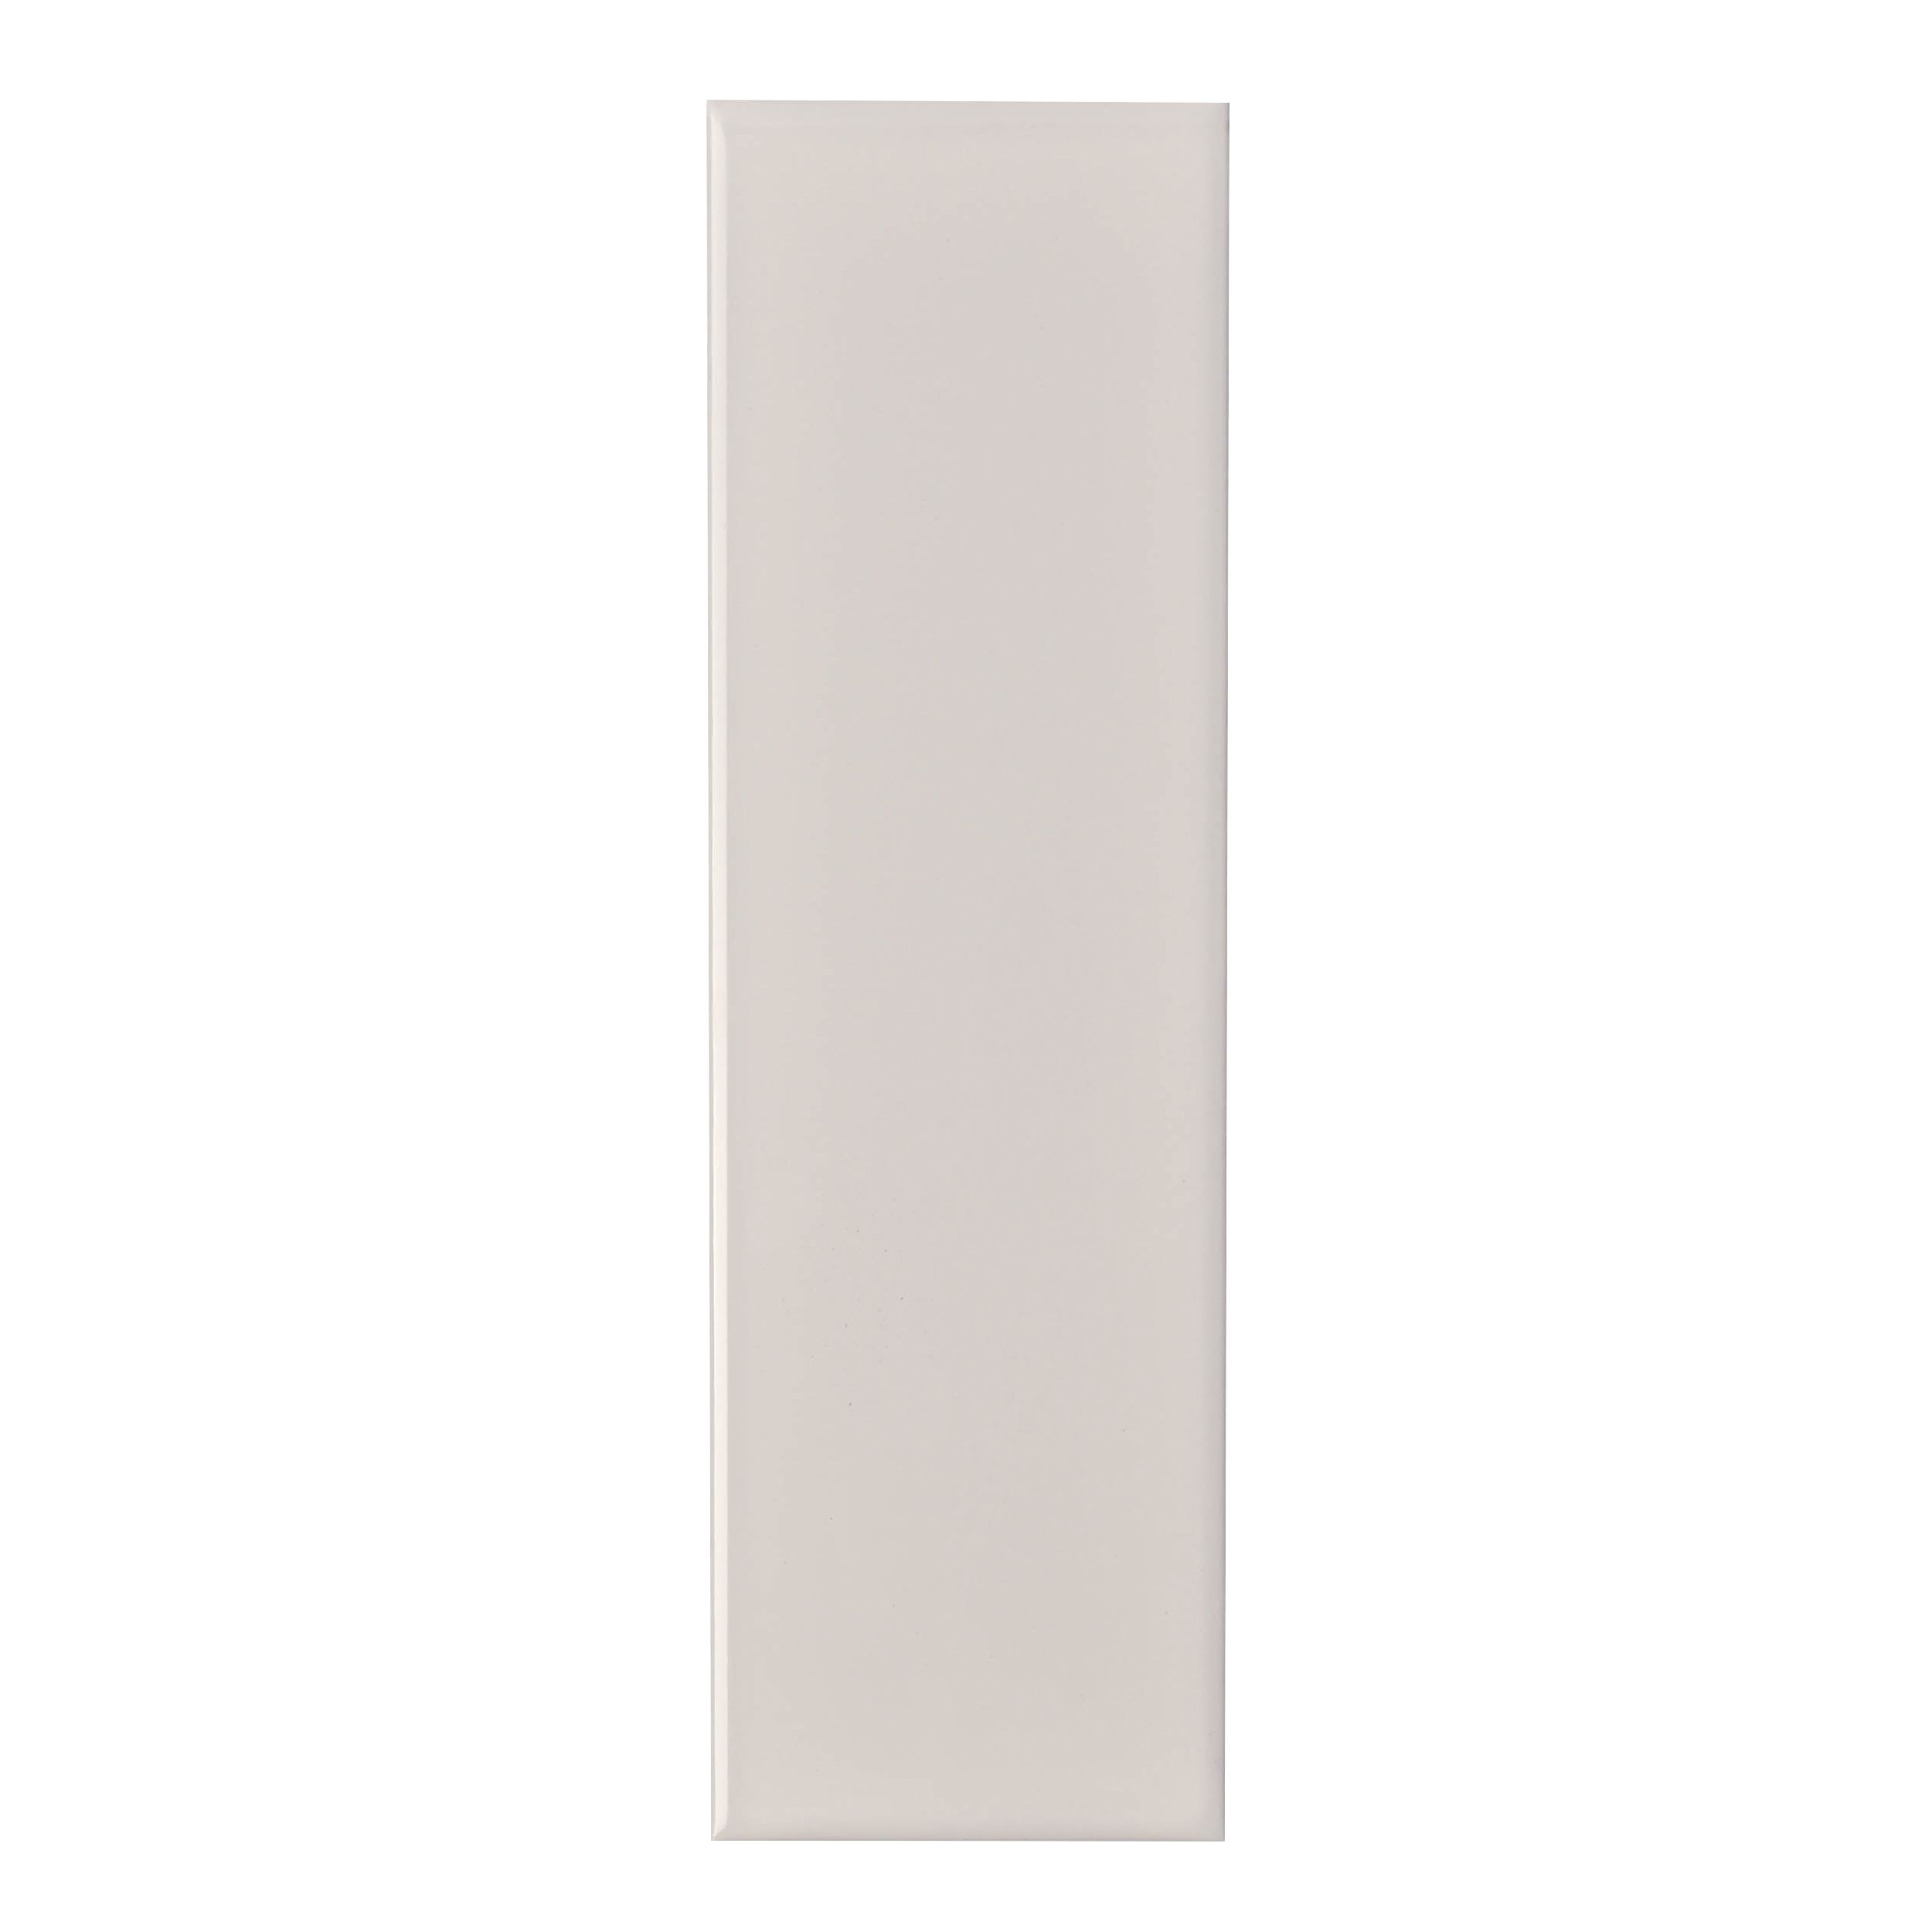 Johnson Tiles Mayfair White Gloss Ceramic Indoor Wall tile Sample